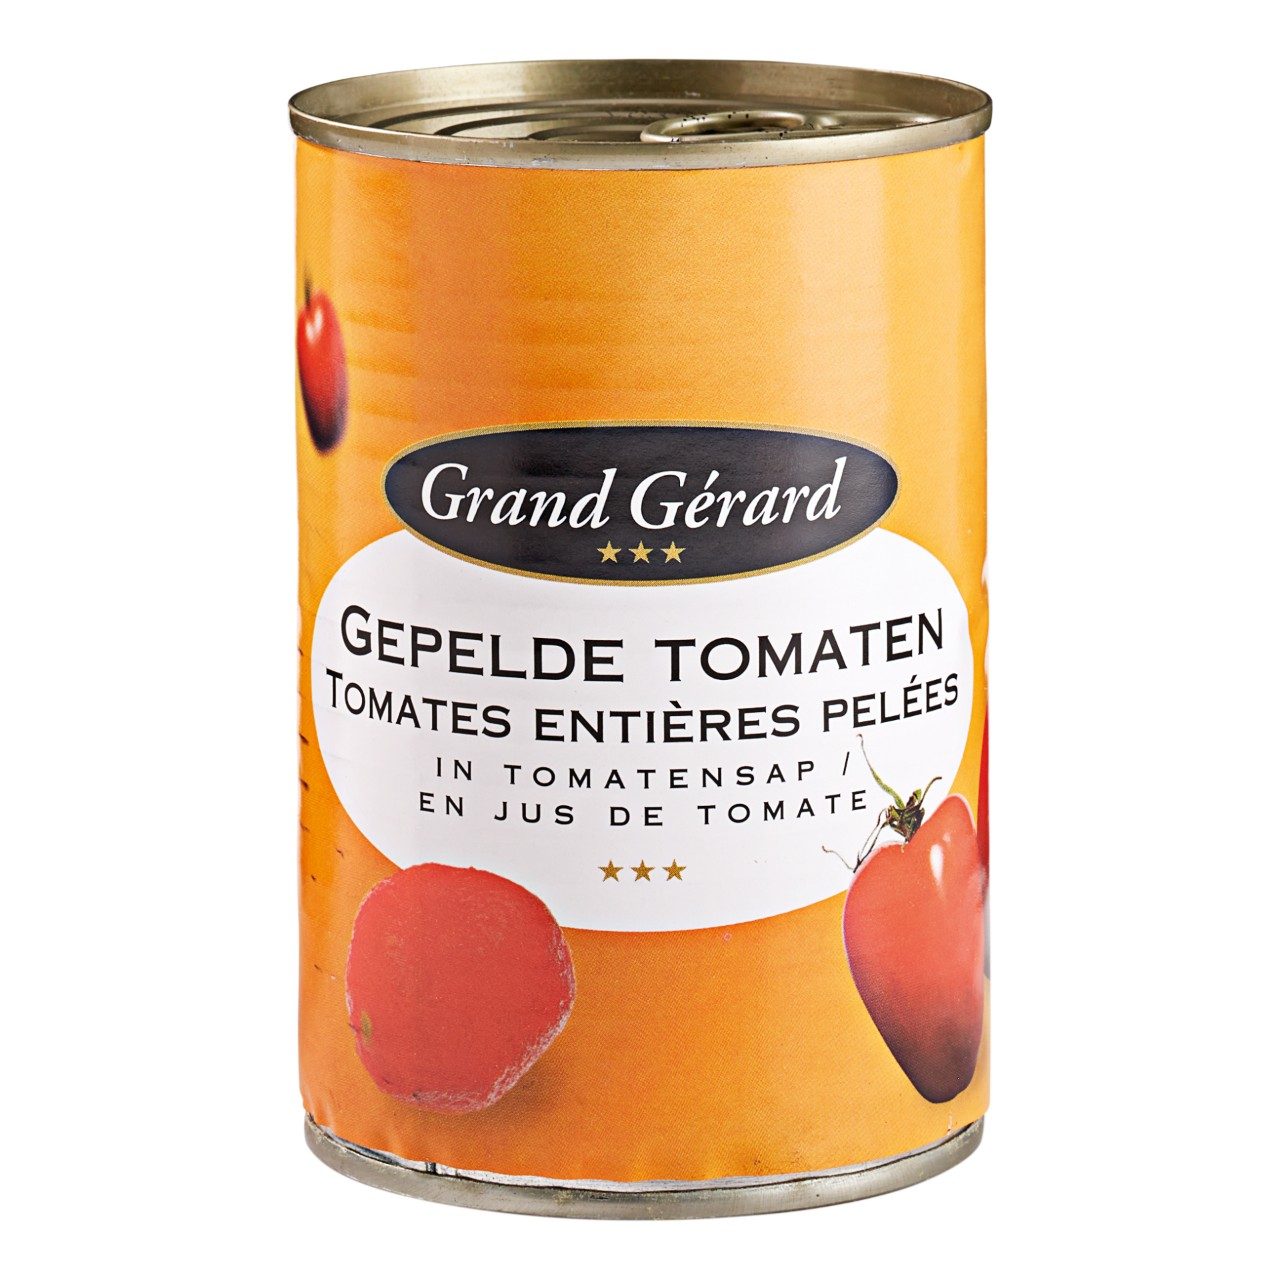 Gepelde tomaten